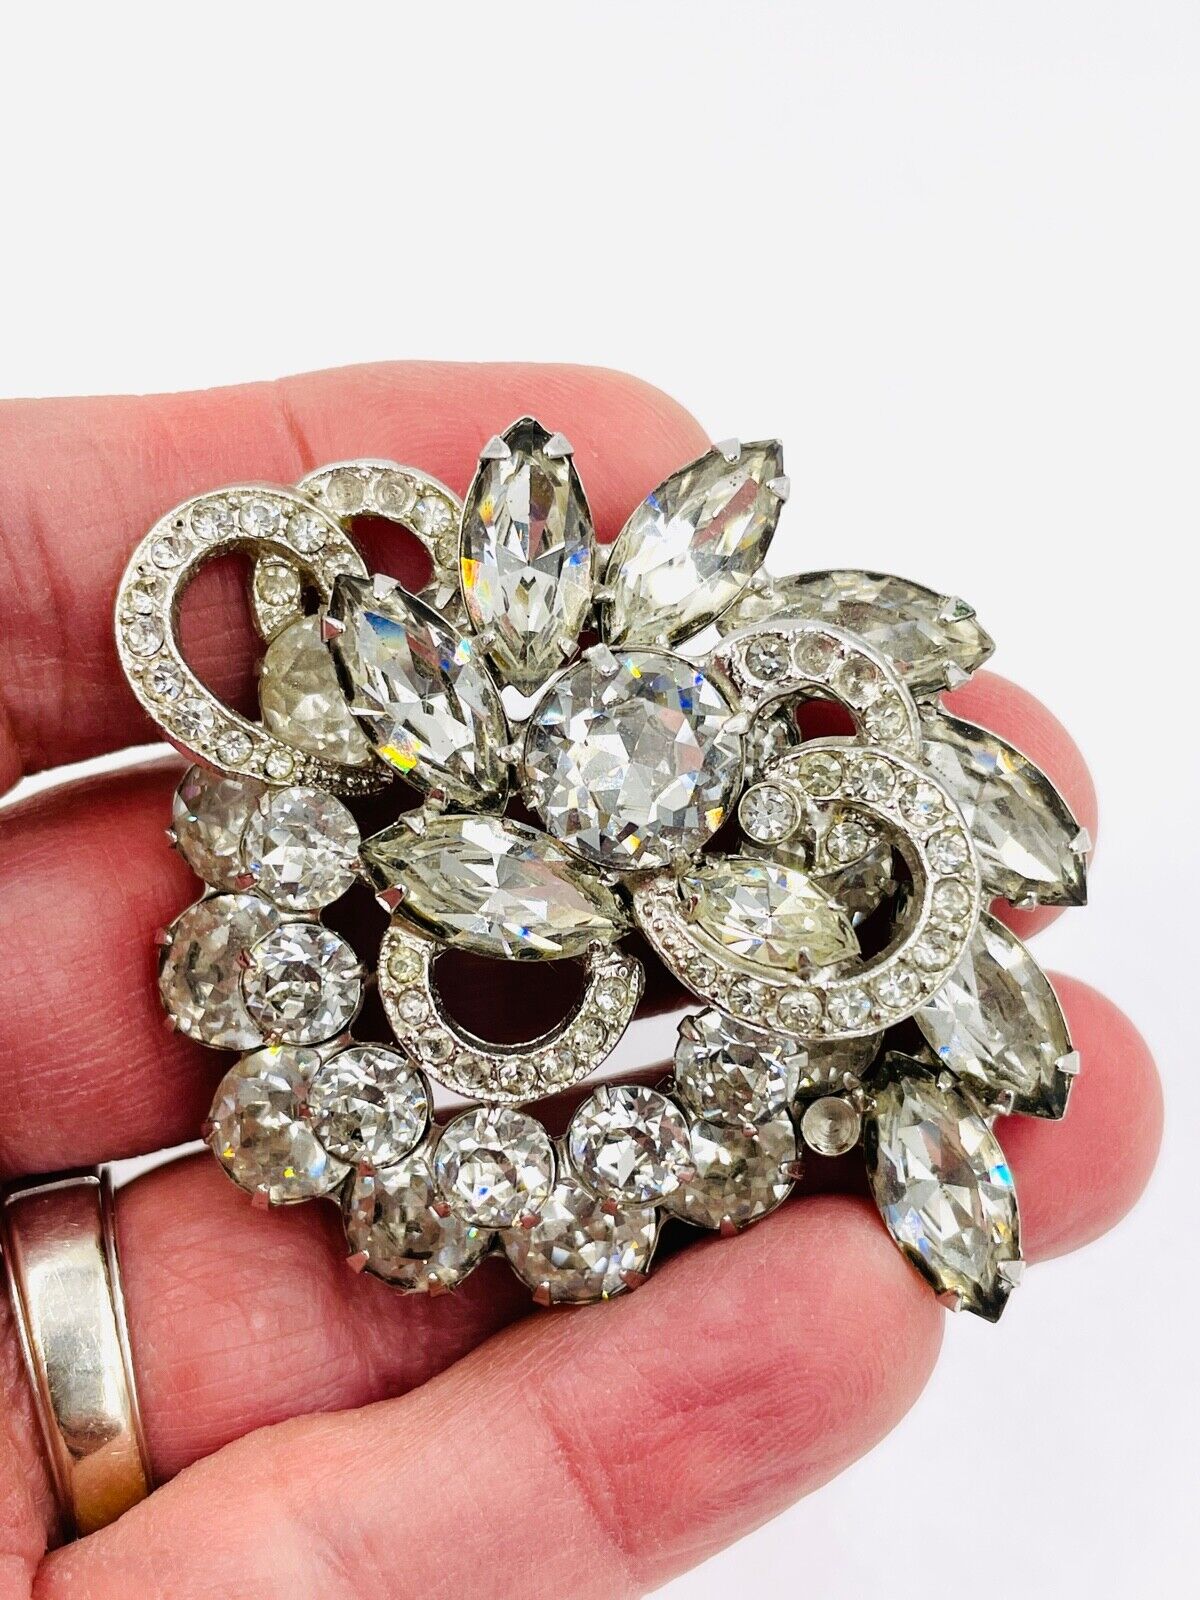 Vintage Eisenberg Clear Crystal Rhinestone Brooch Pin Rhodium